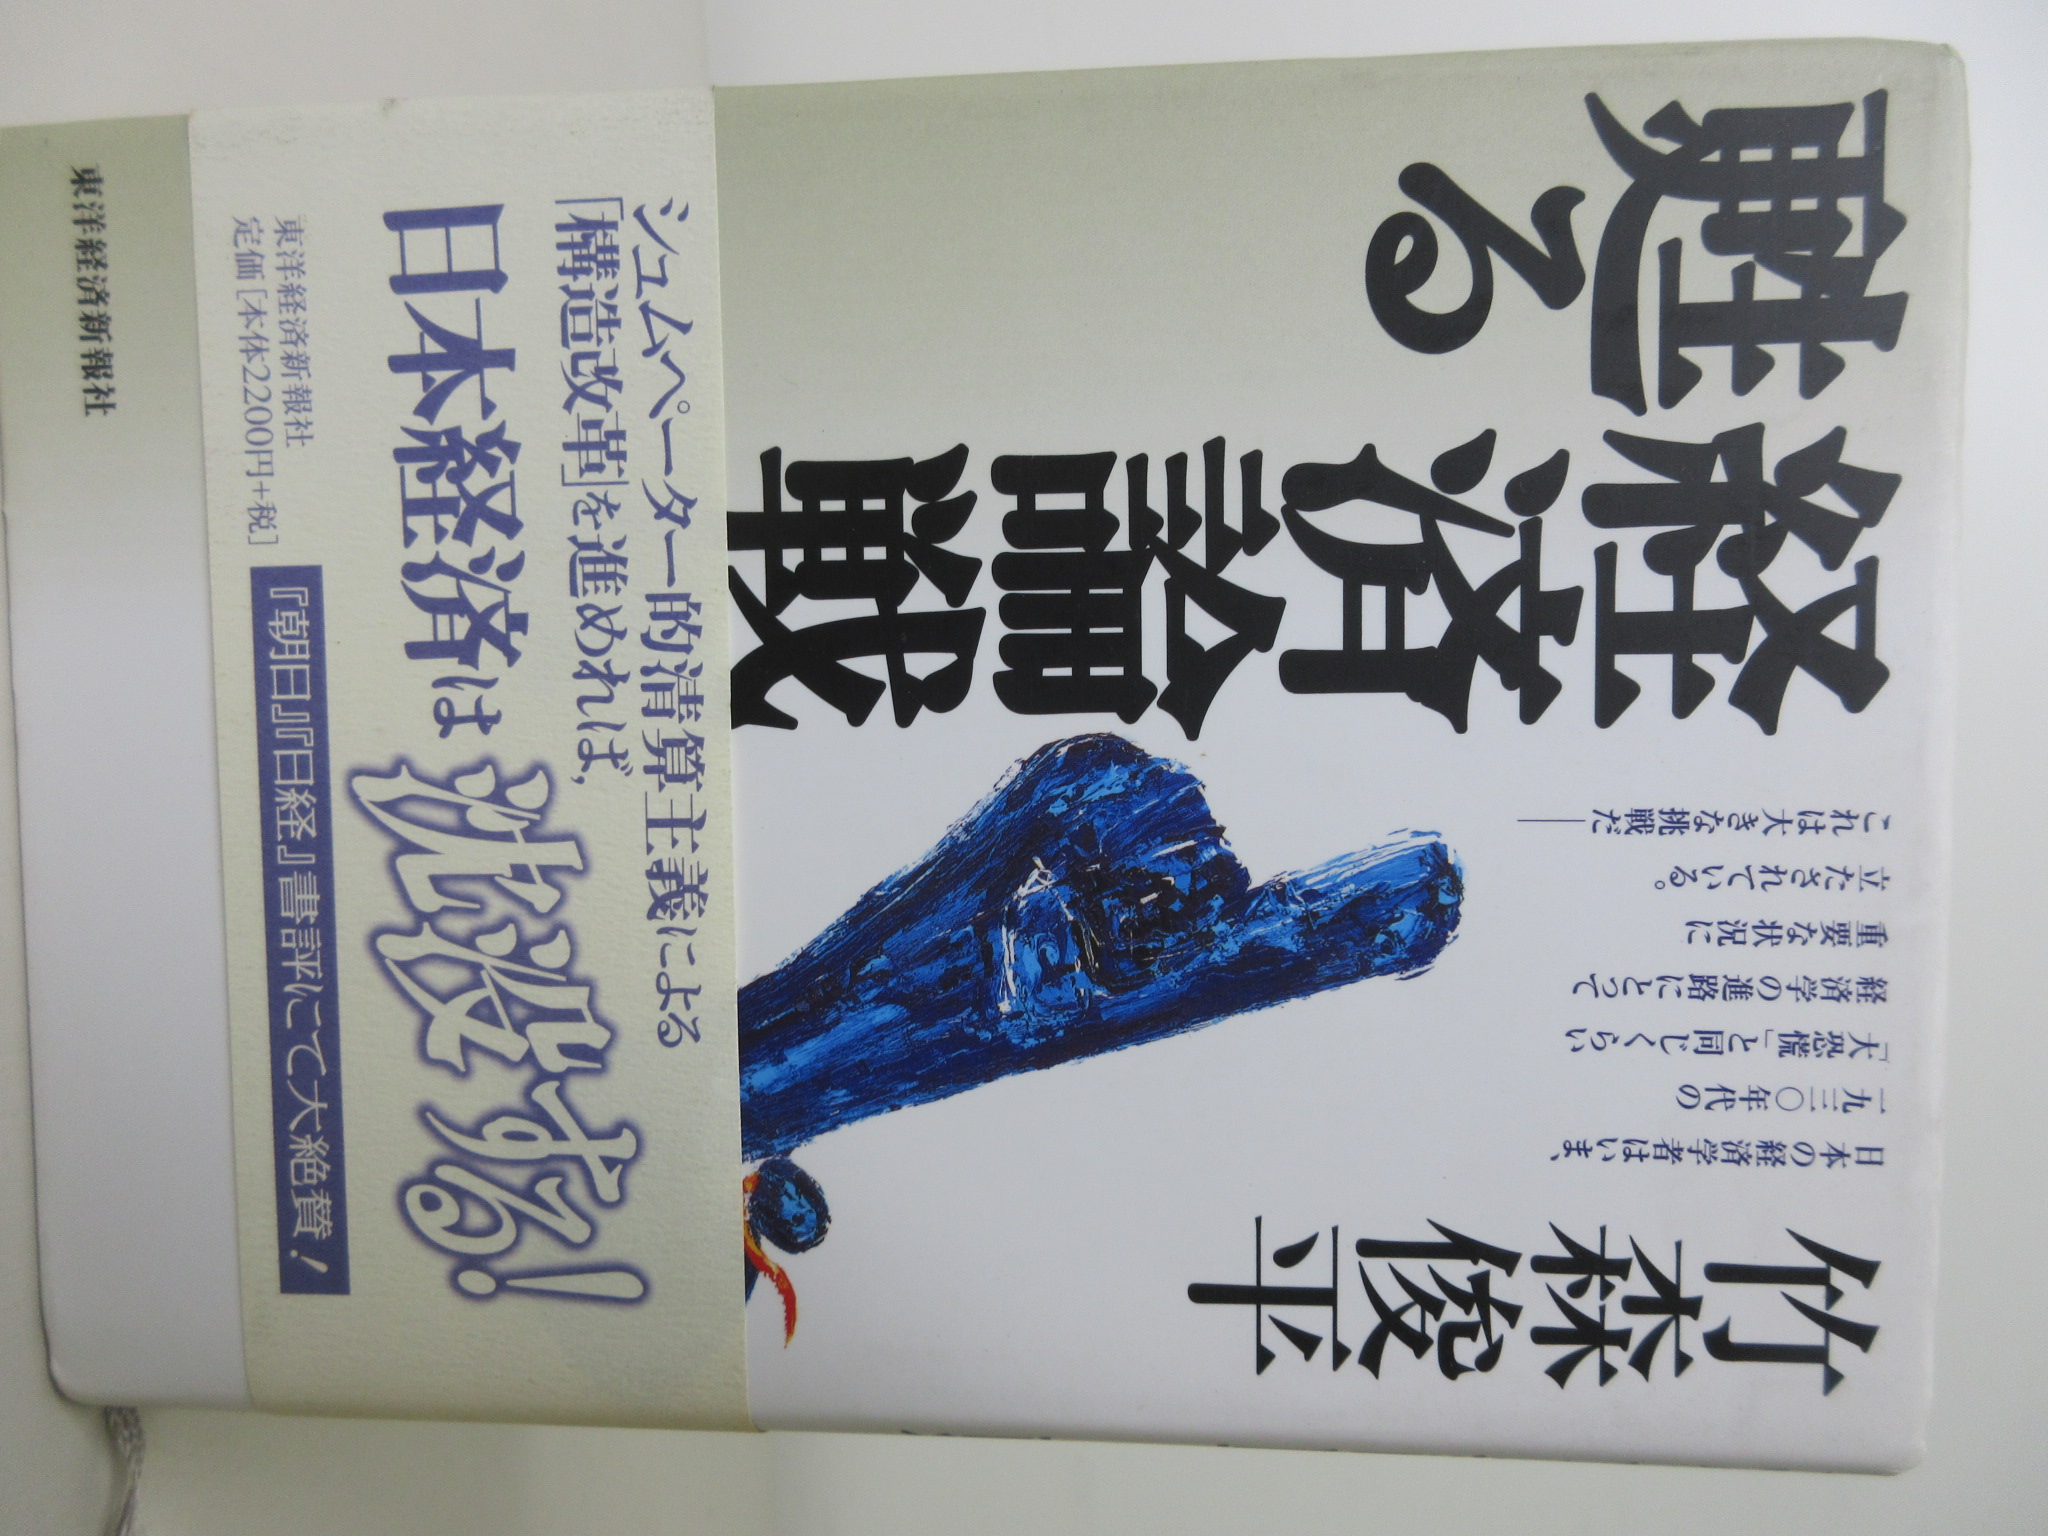 経済論戦は甦る[竹森 俊平](東洋経済新報社)(ISBN:9784492393864)